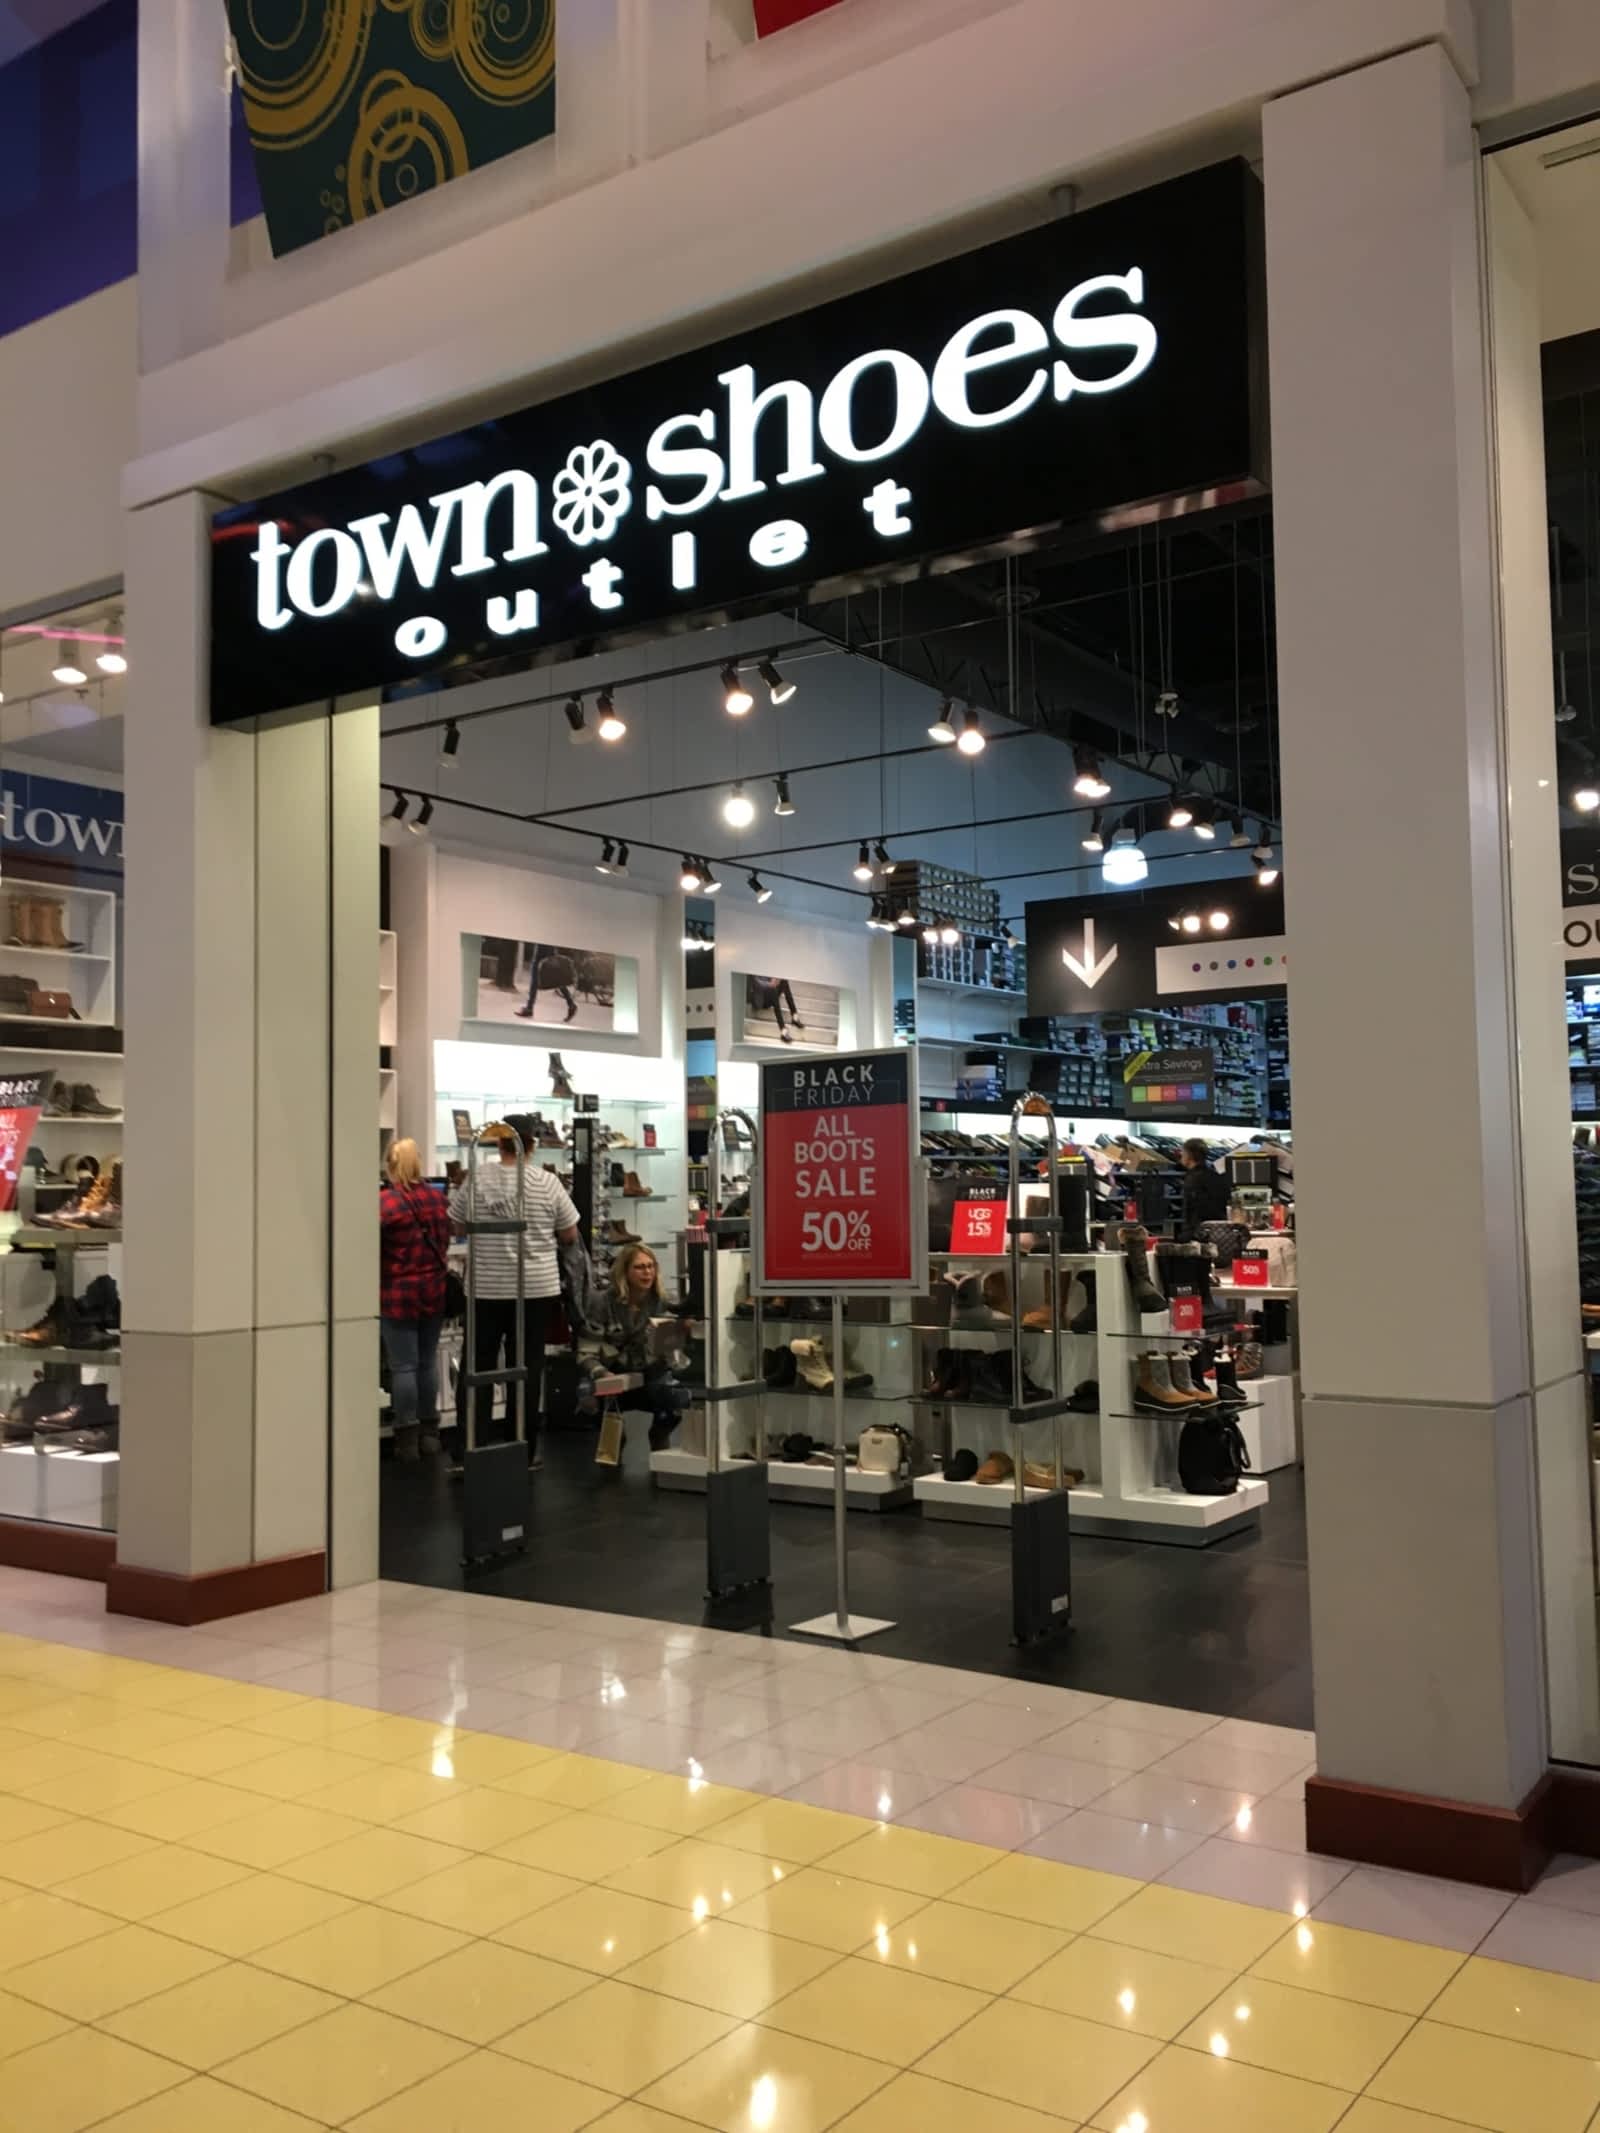 town shoes sale